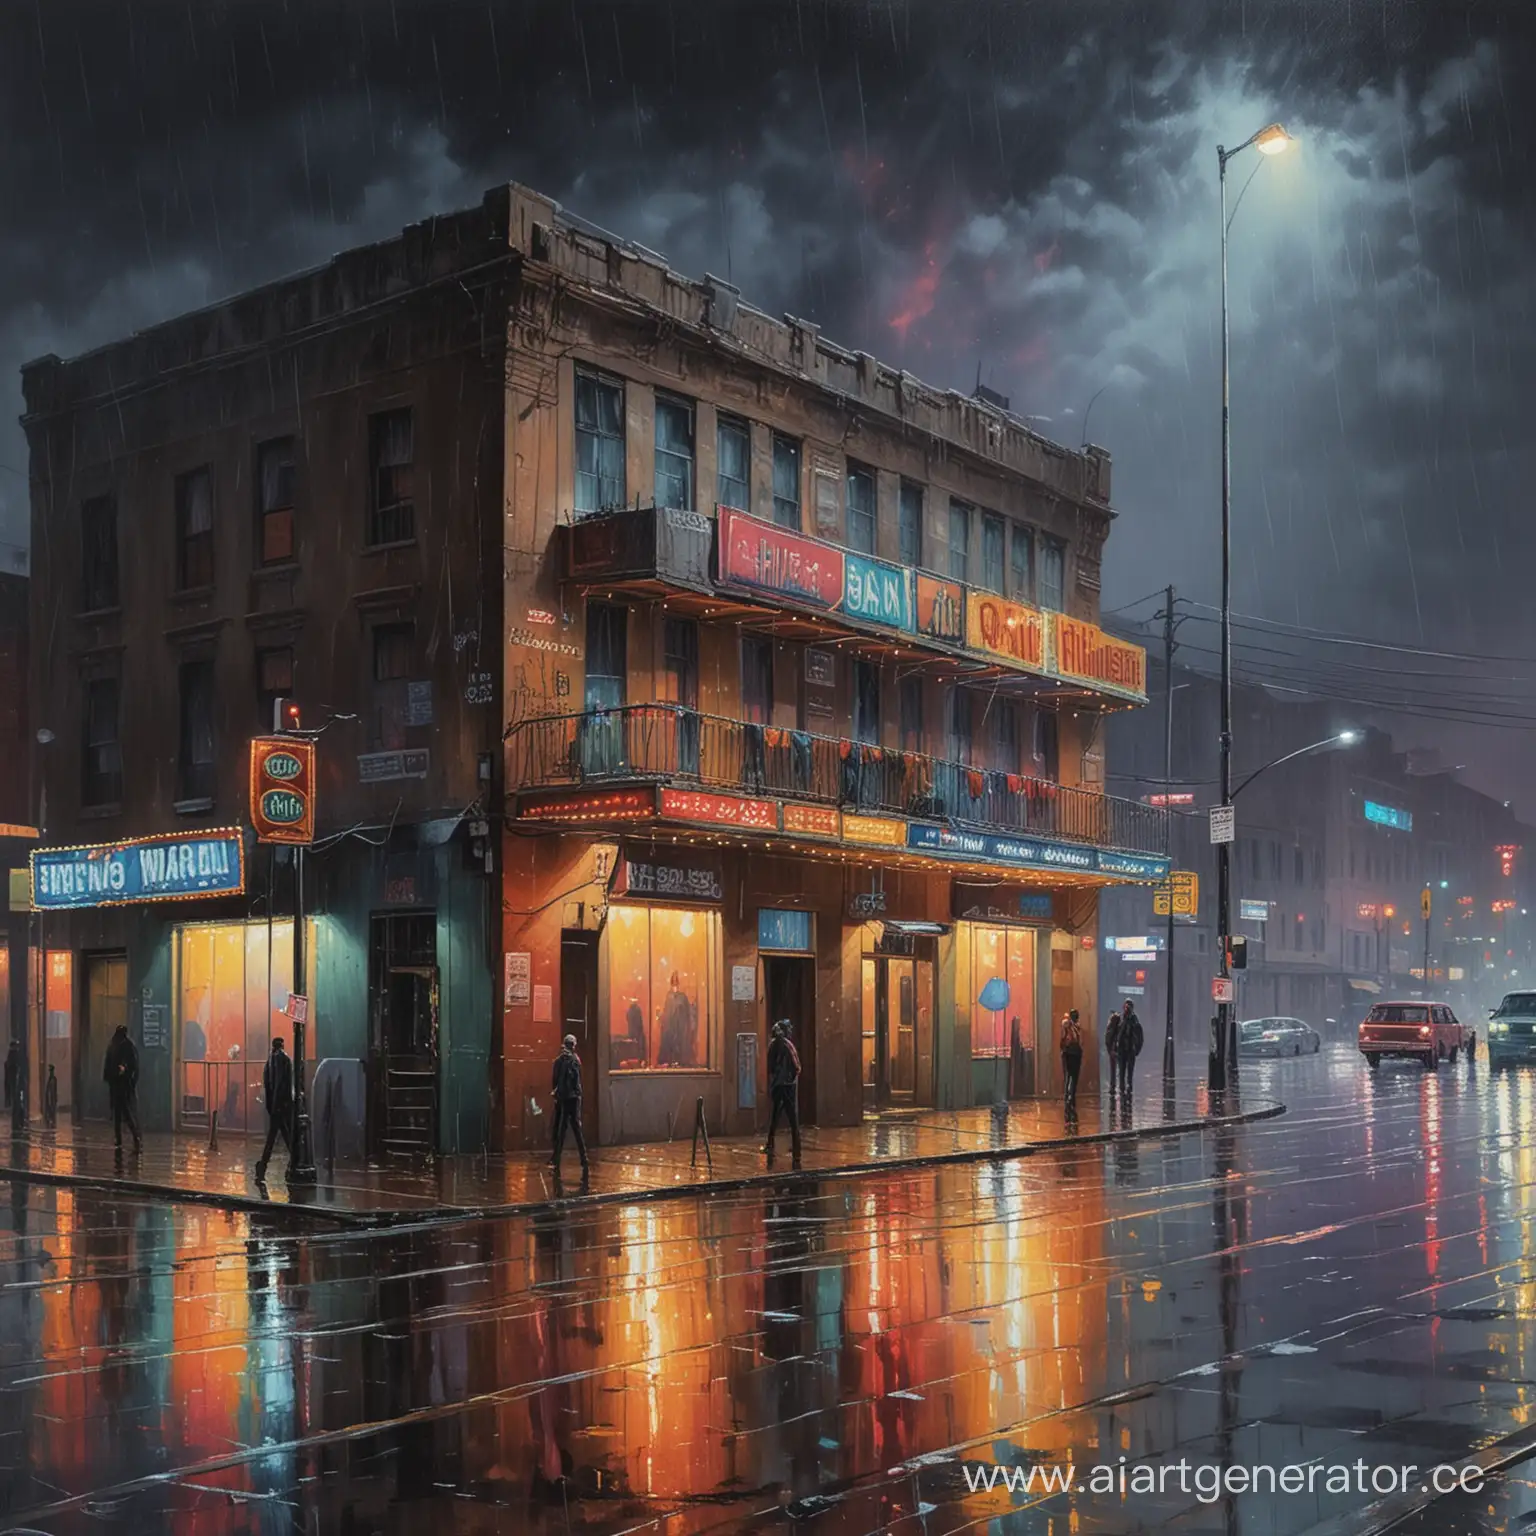 Nighttime-Street-Club-in-the-Rain